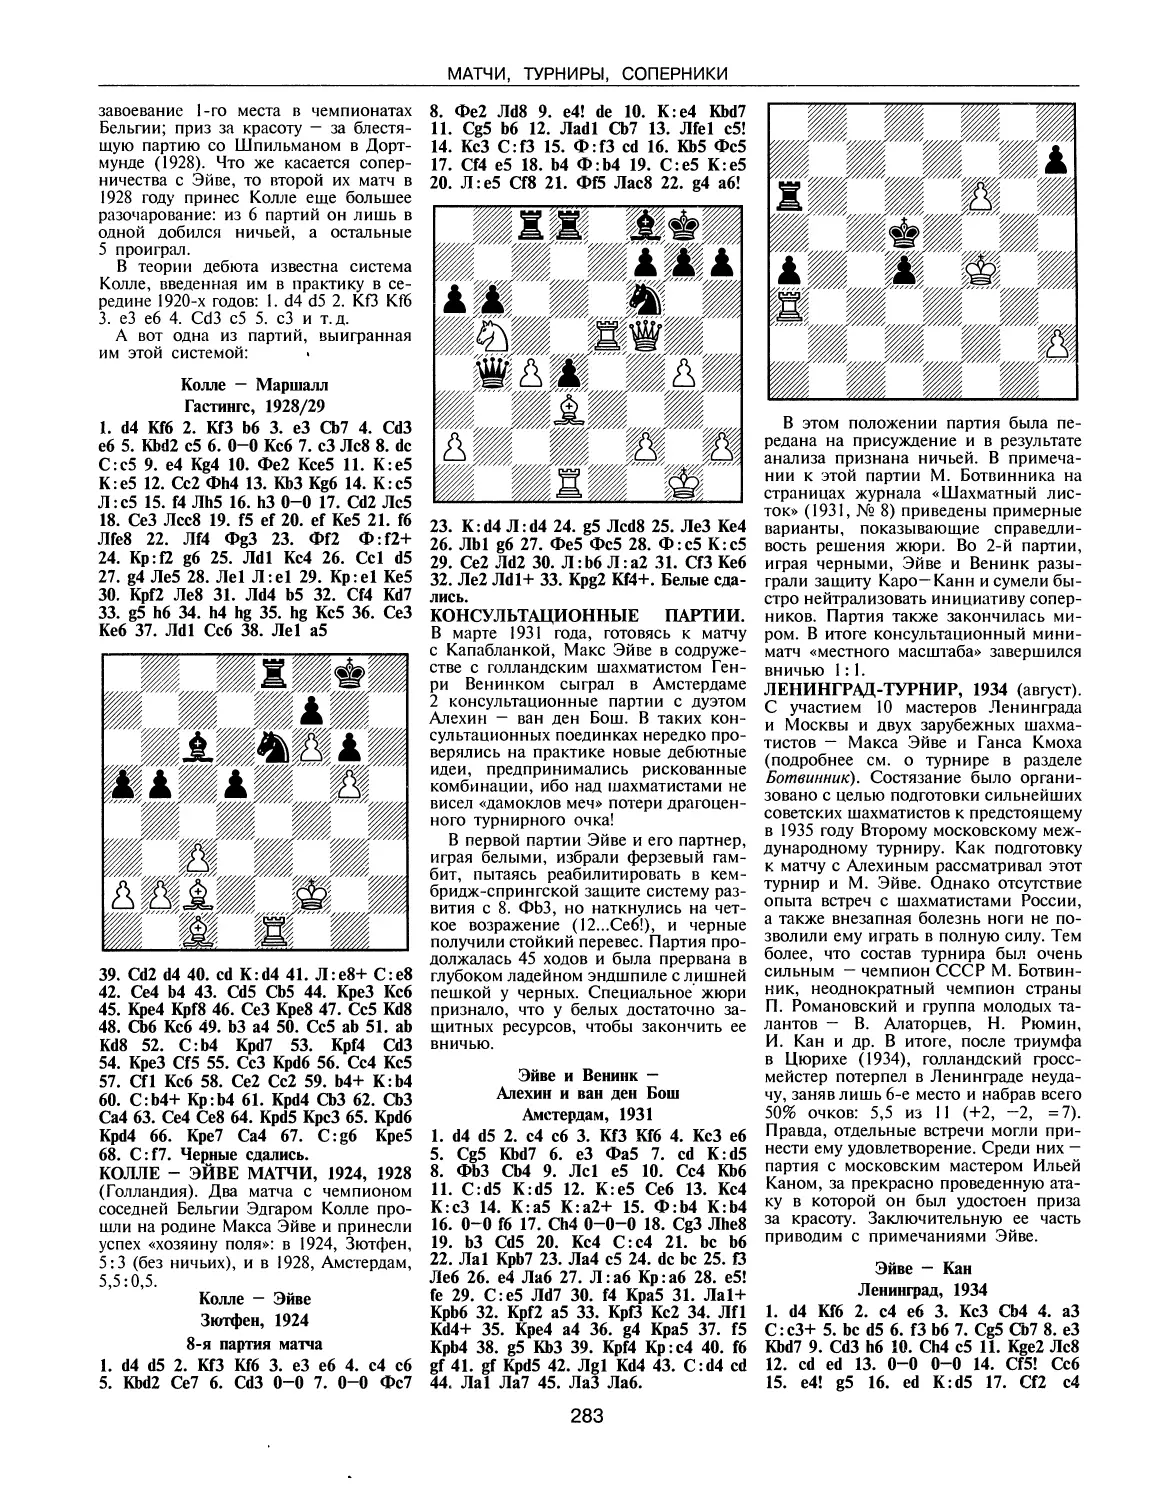 Консультационные партии
Ленинград-турнир, 1934